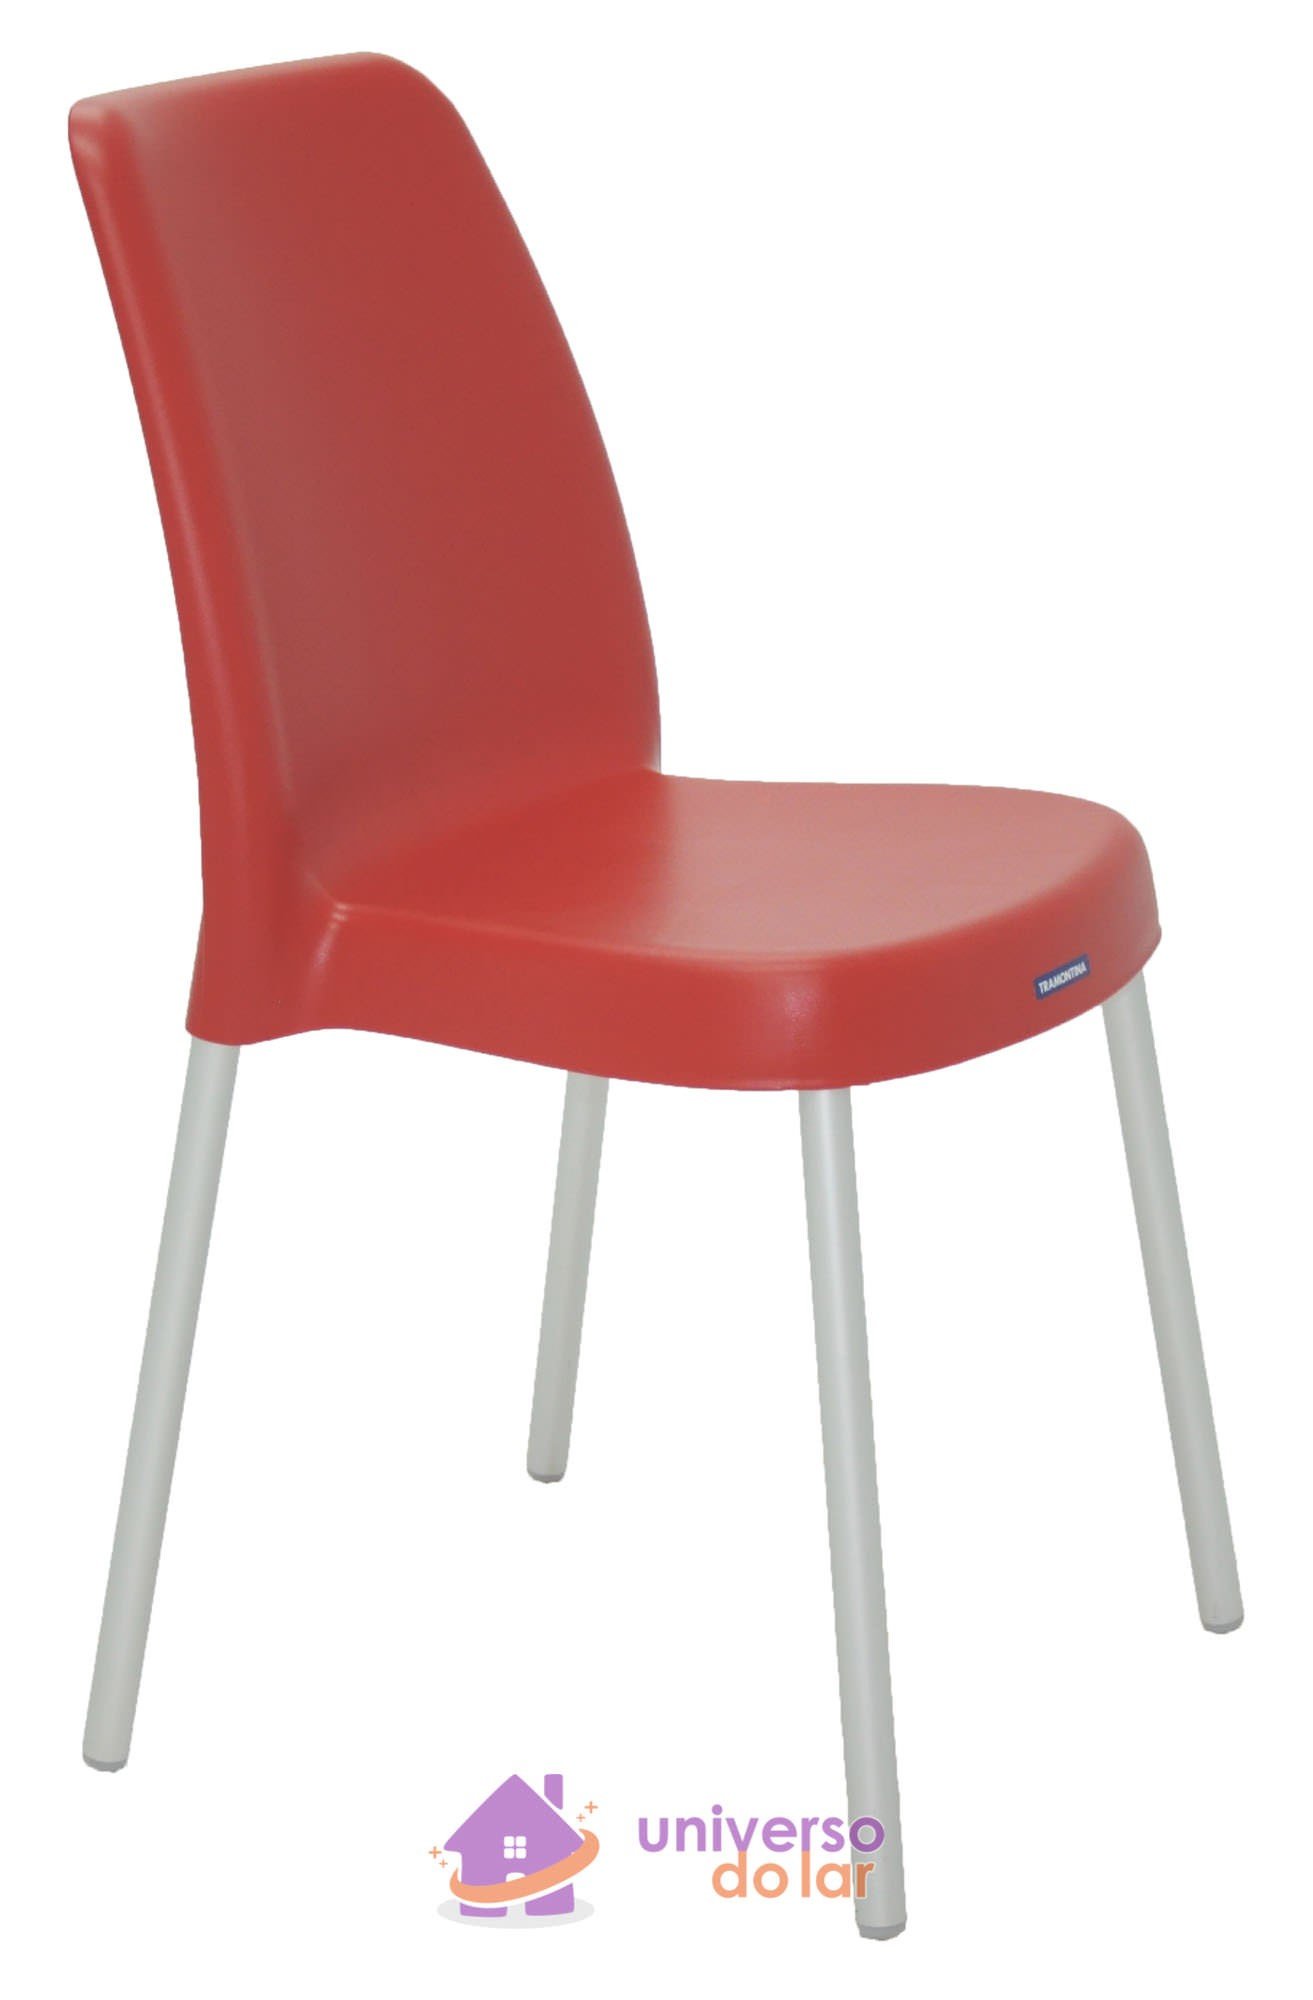 Cadeira Vanda Vermelha sem Braços em Polipropileno com Pernas Anodizadas